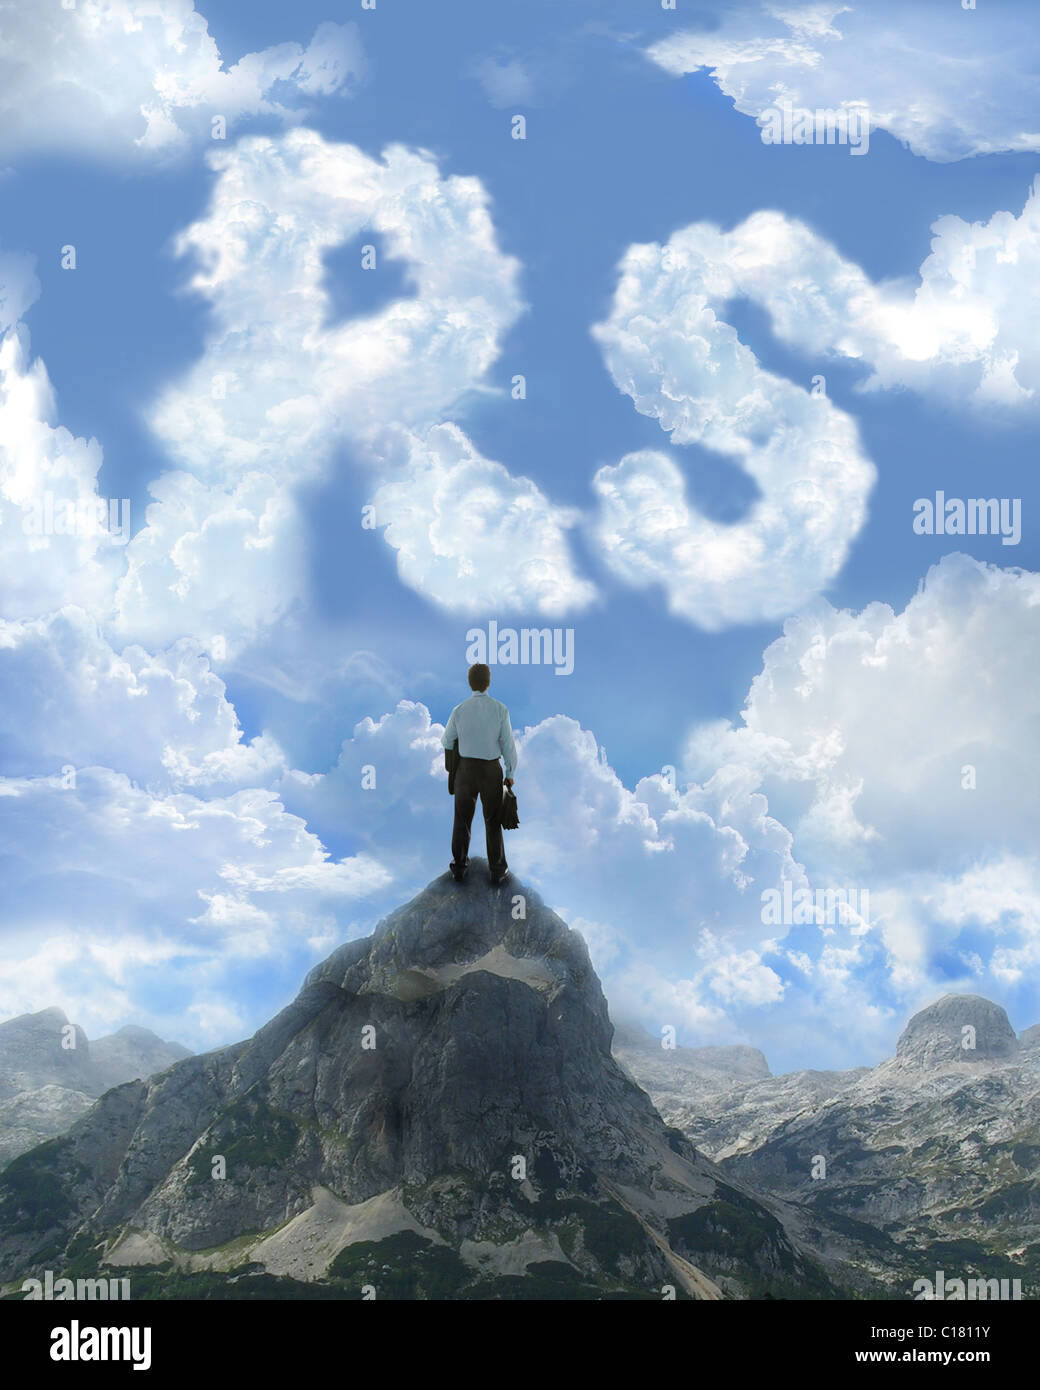 Businessman standing on a Mountain et à l'égard nuages en forme de roupie Banque D'Images